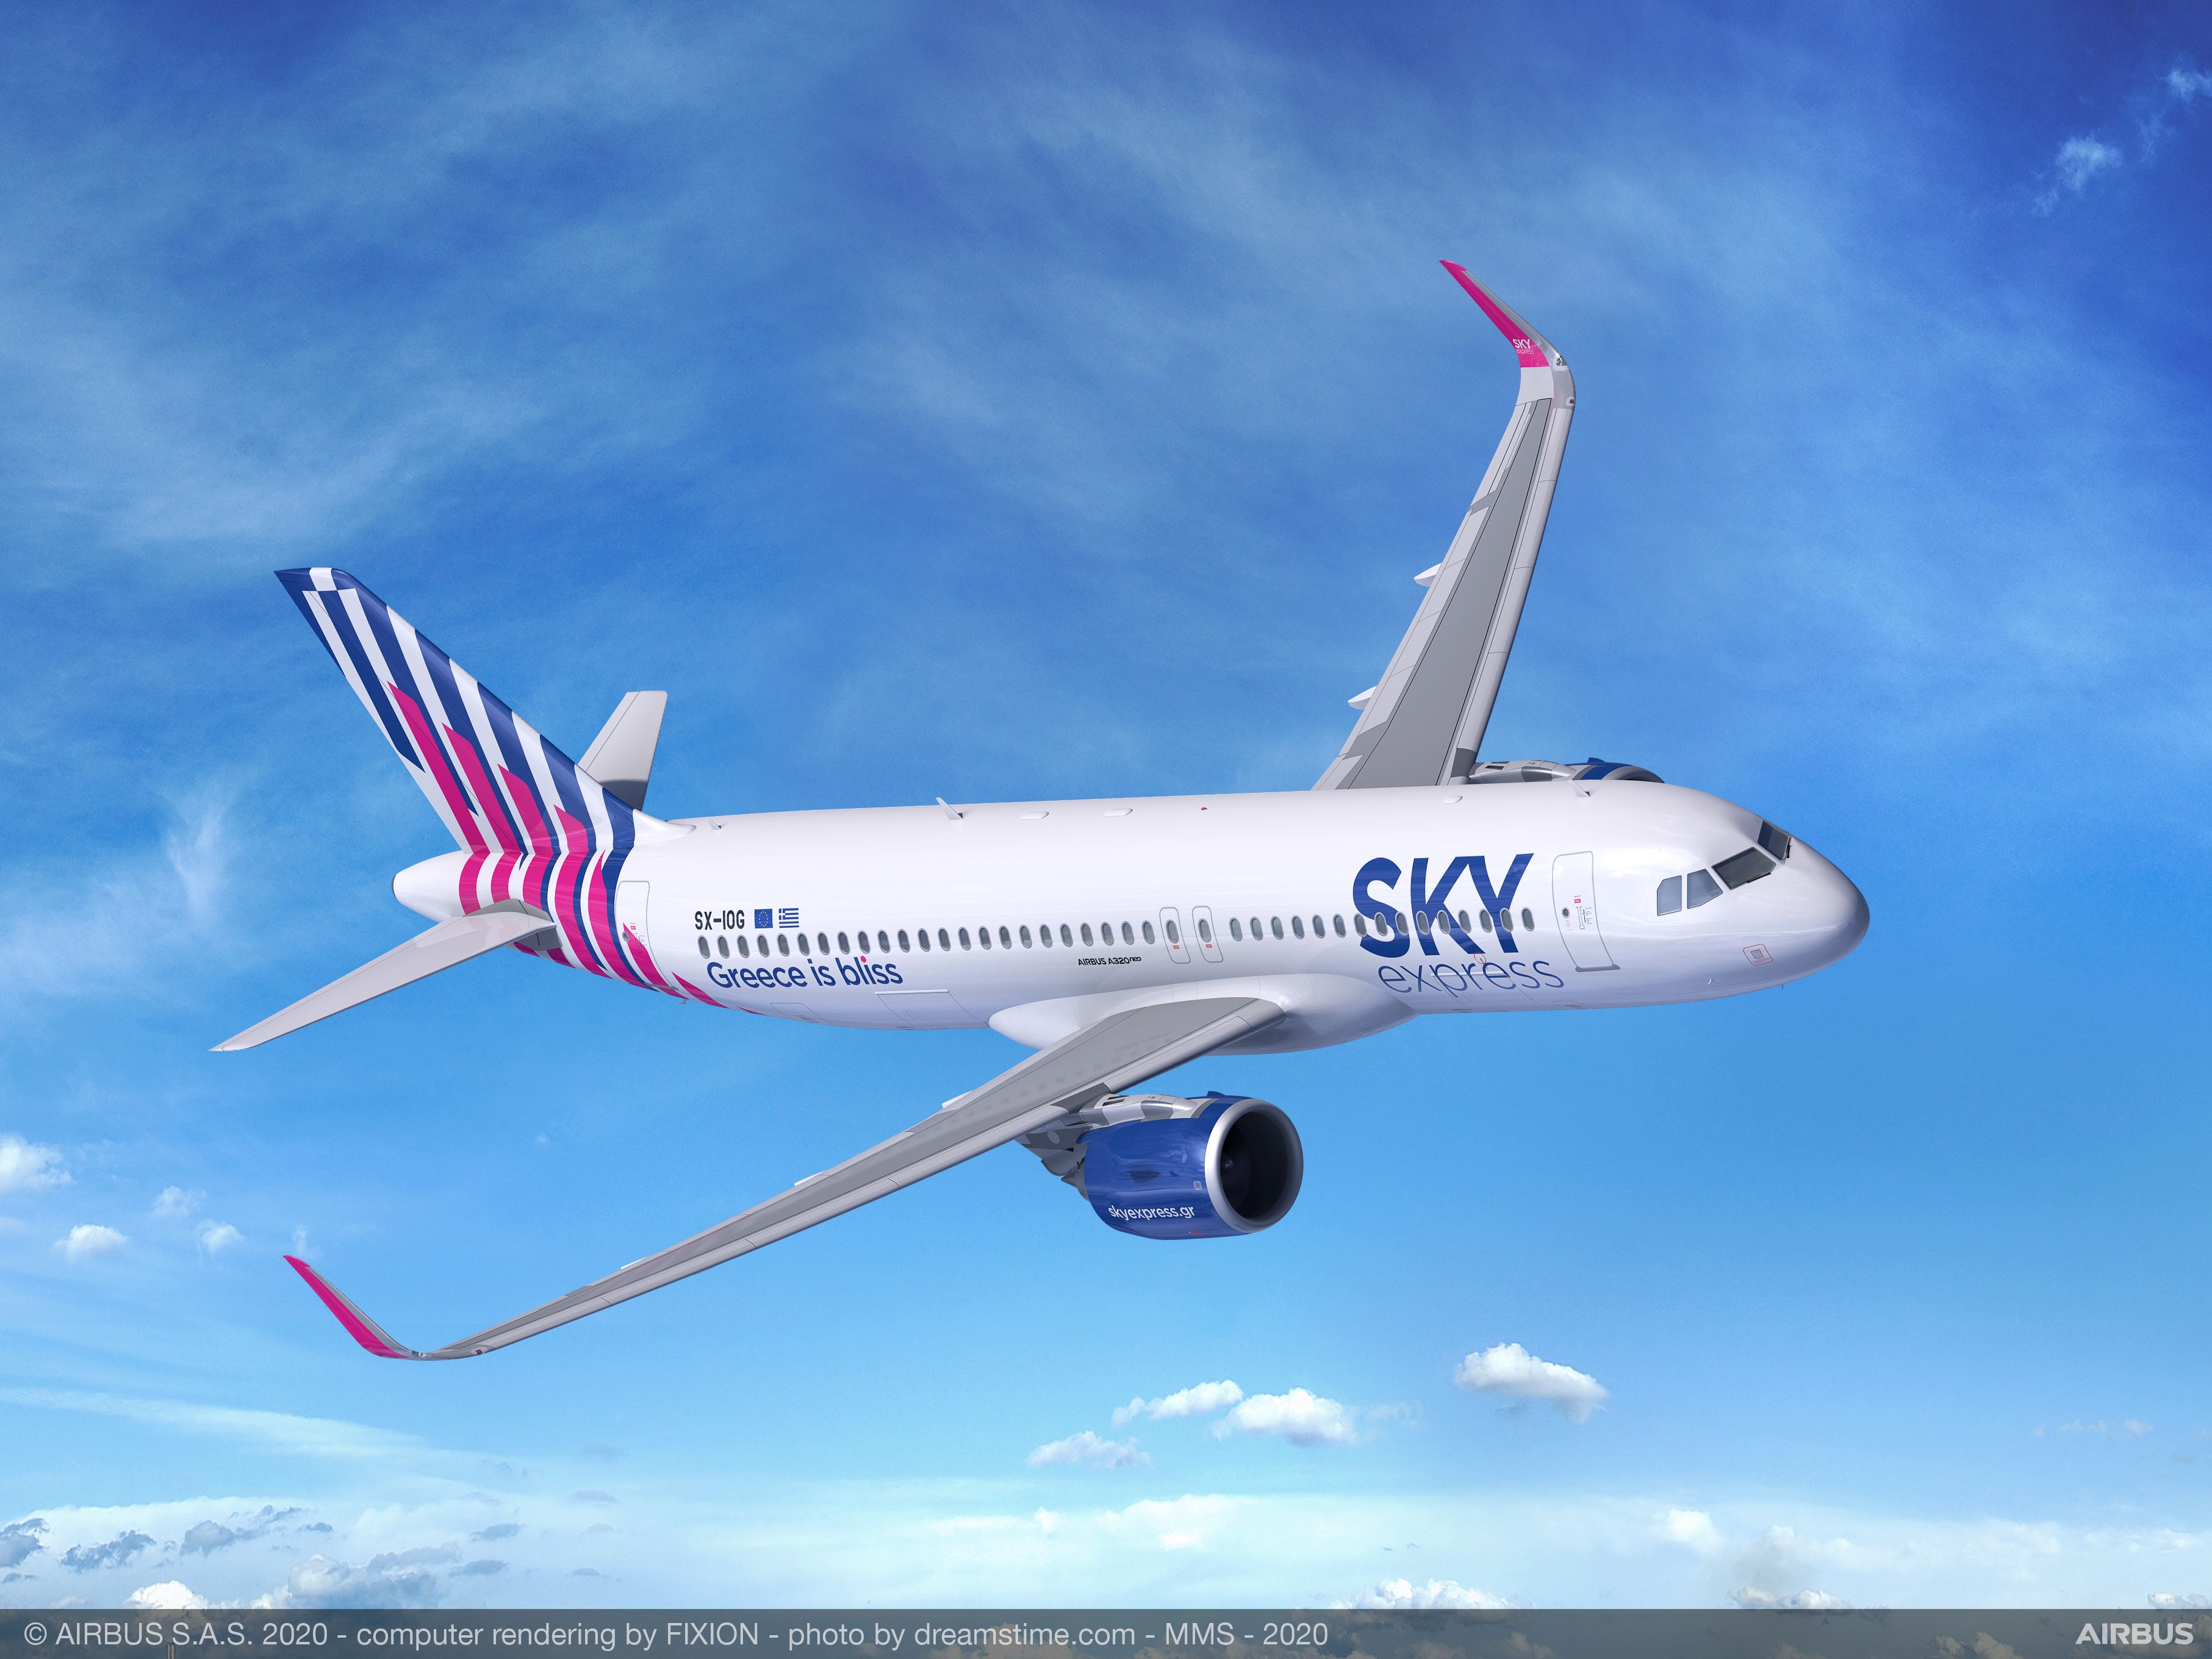 Με 6 A320neo η SKY express στην οικογένεια της Airbus